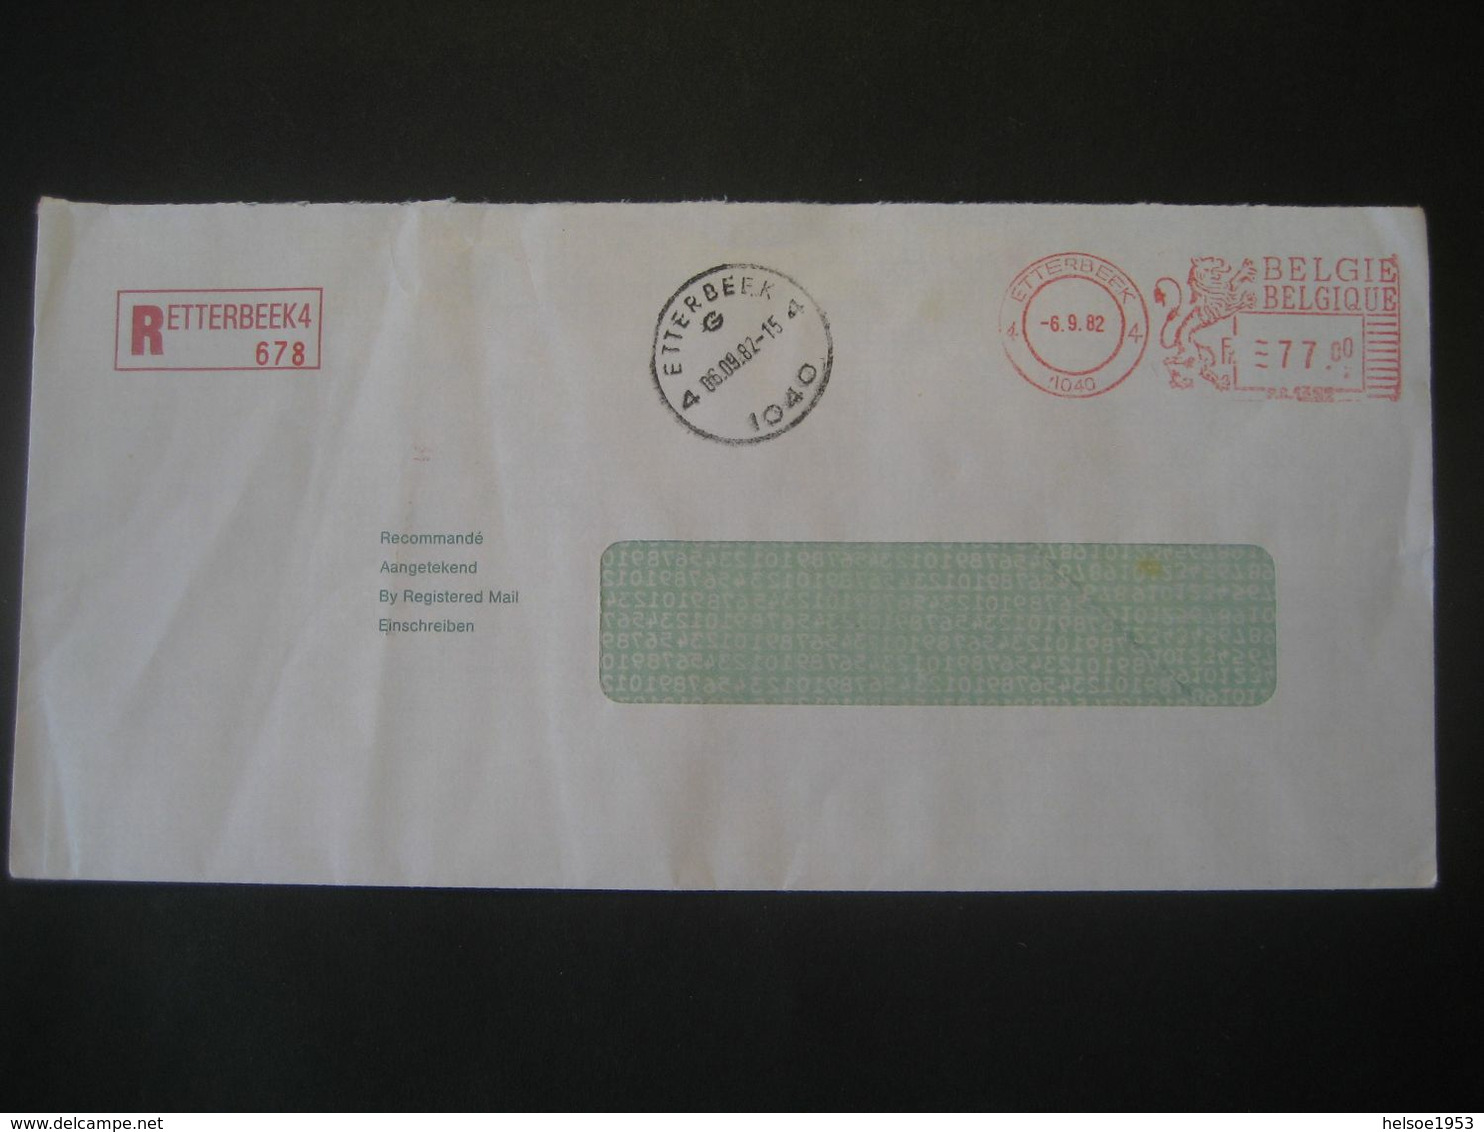 Belgien 1982- 2 Reco-Geschäftsbrief Mit Freistempel / Maschinenstempel - 1980-99